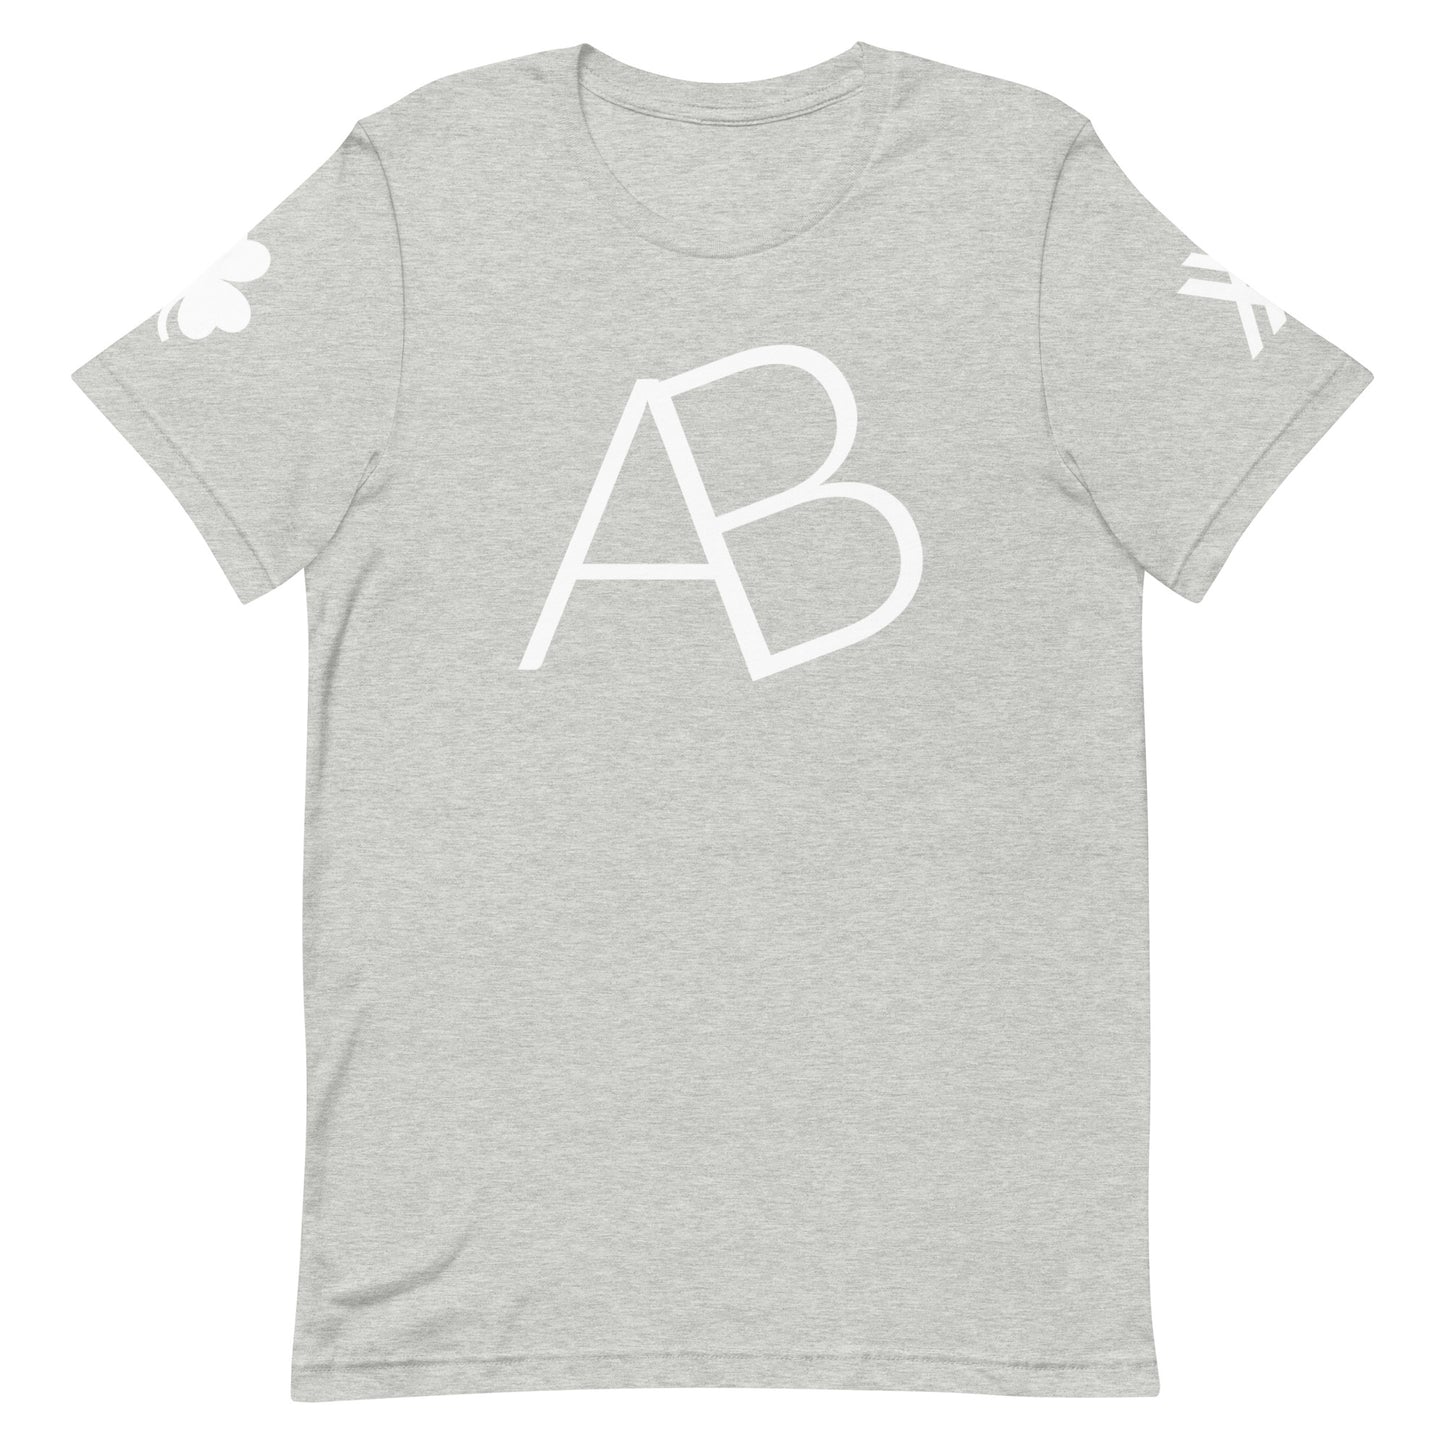 AB's Self Indulgent Short-Sleeve Unisex T-Shirt